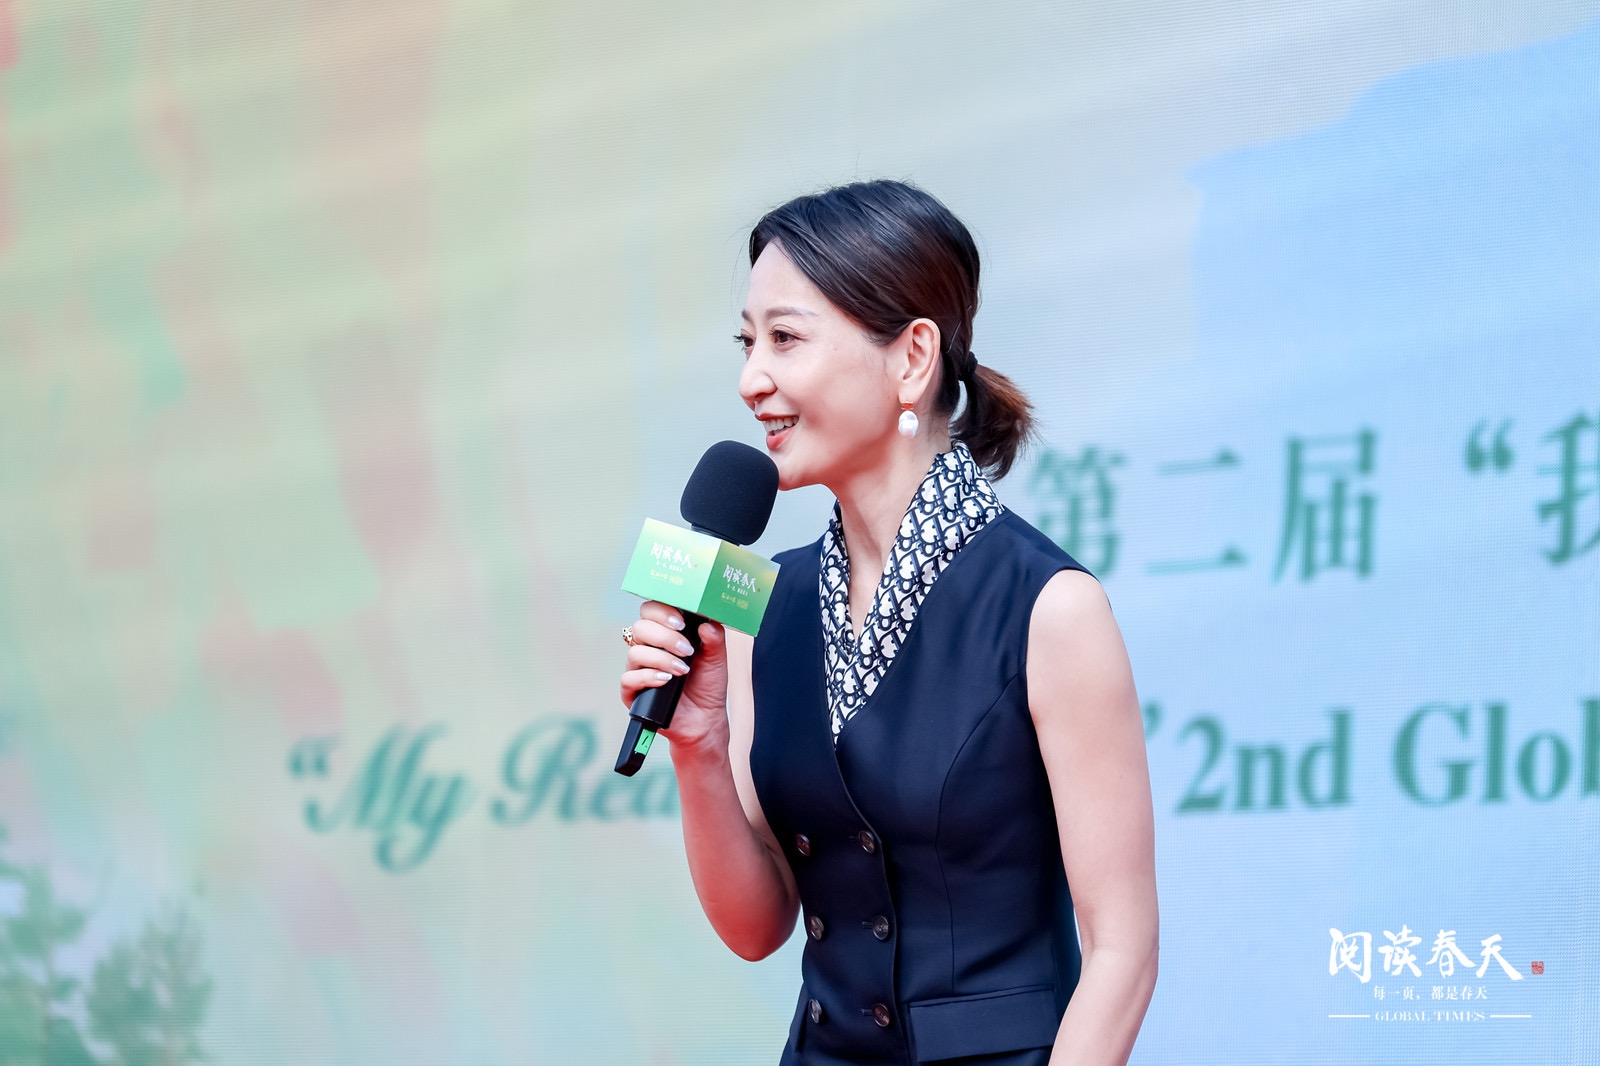 Anchorwoman Xie Yingying